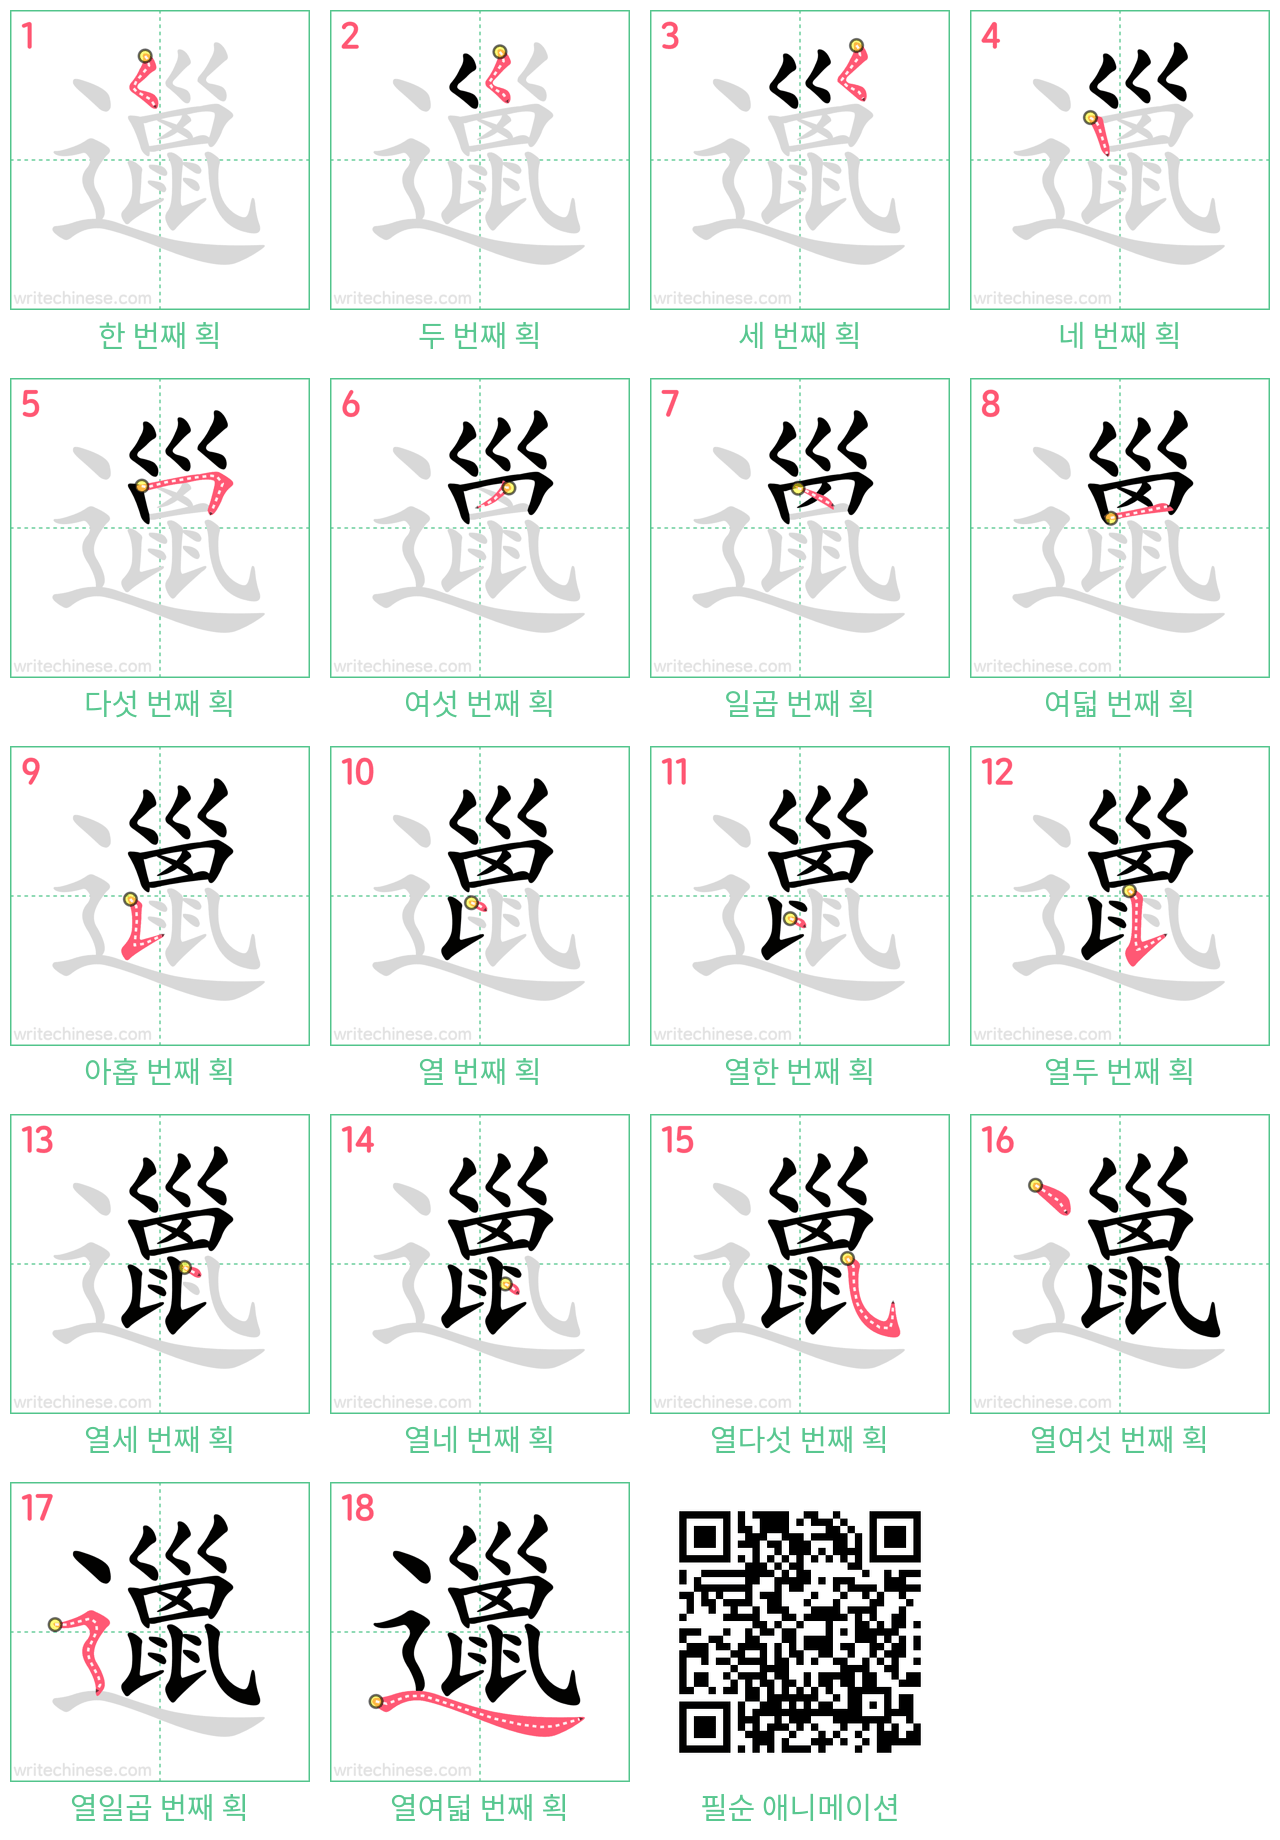 邋 step-by-step stroke order diagrams